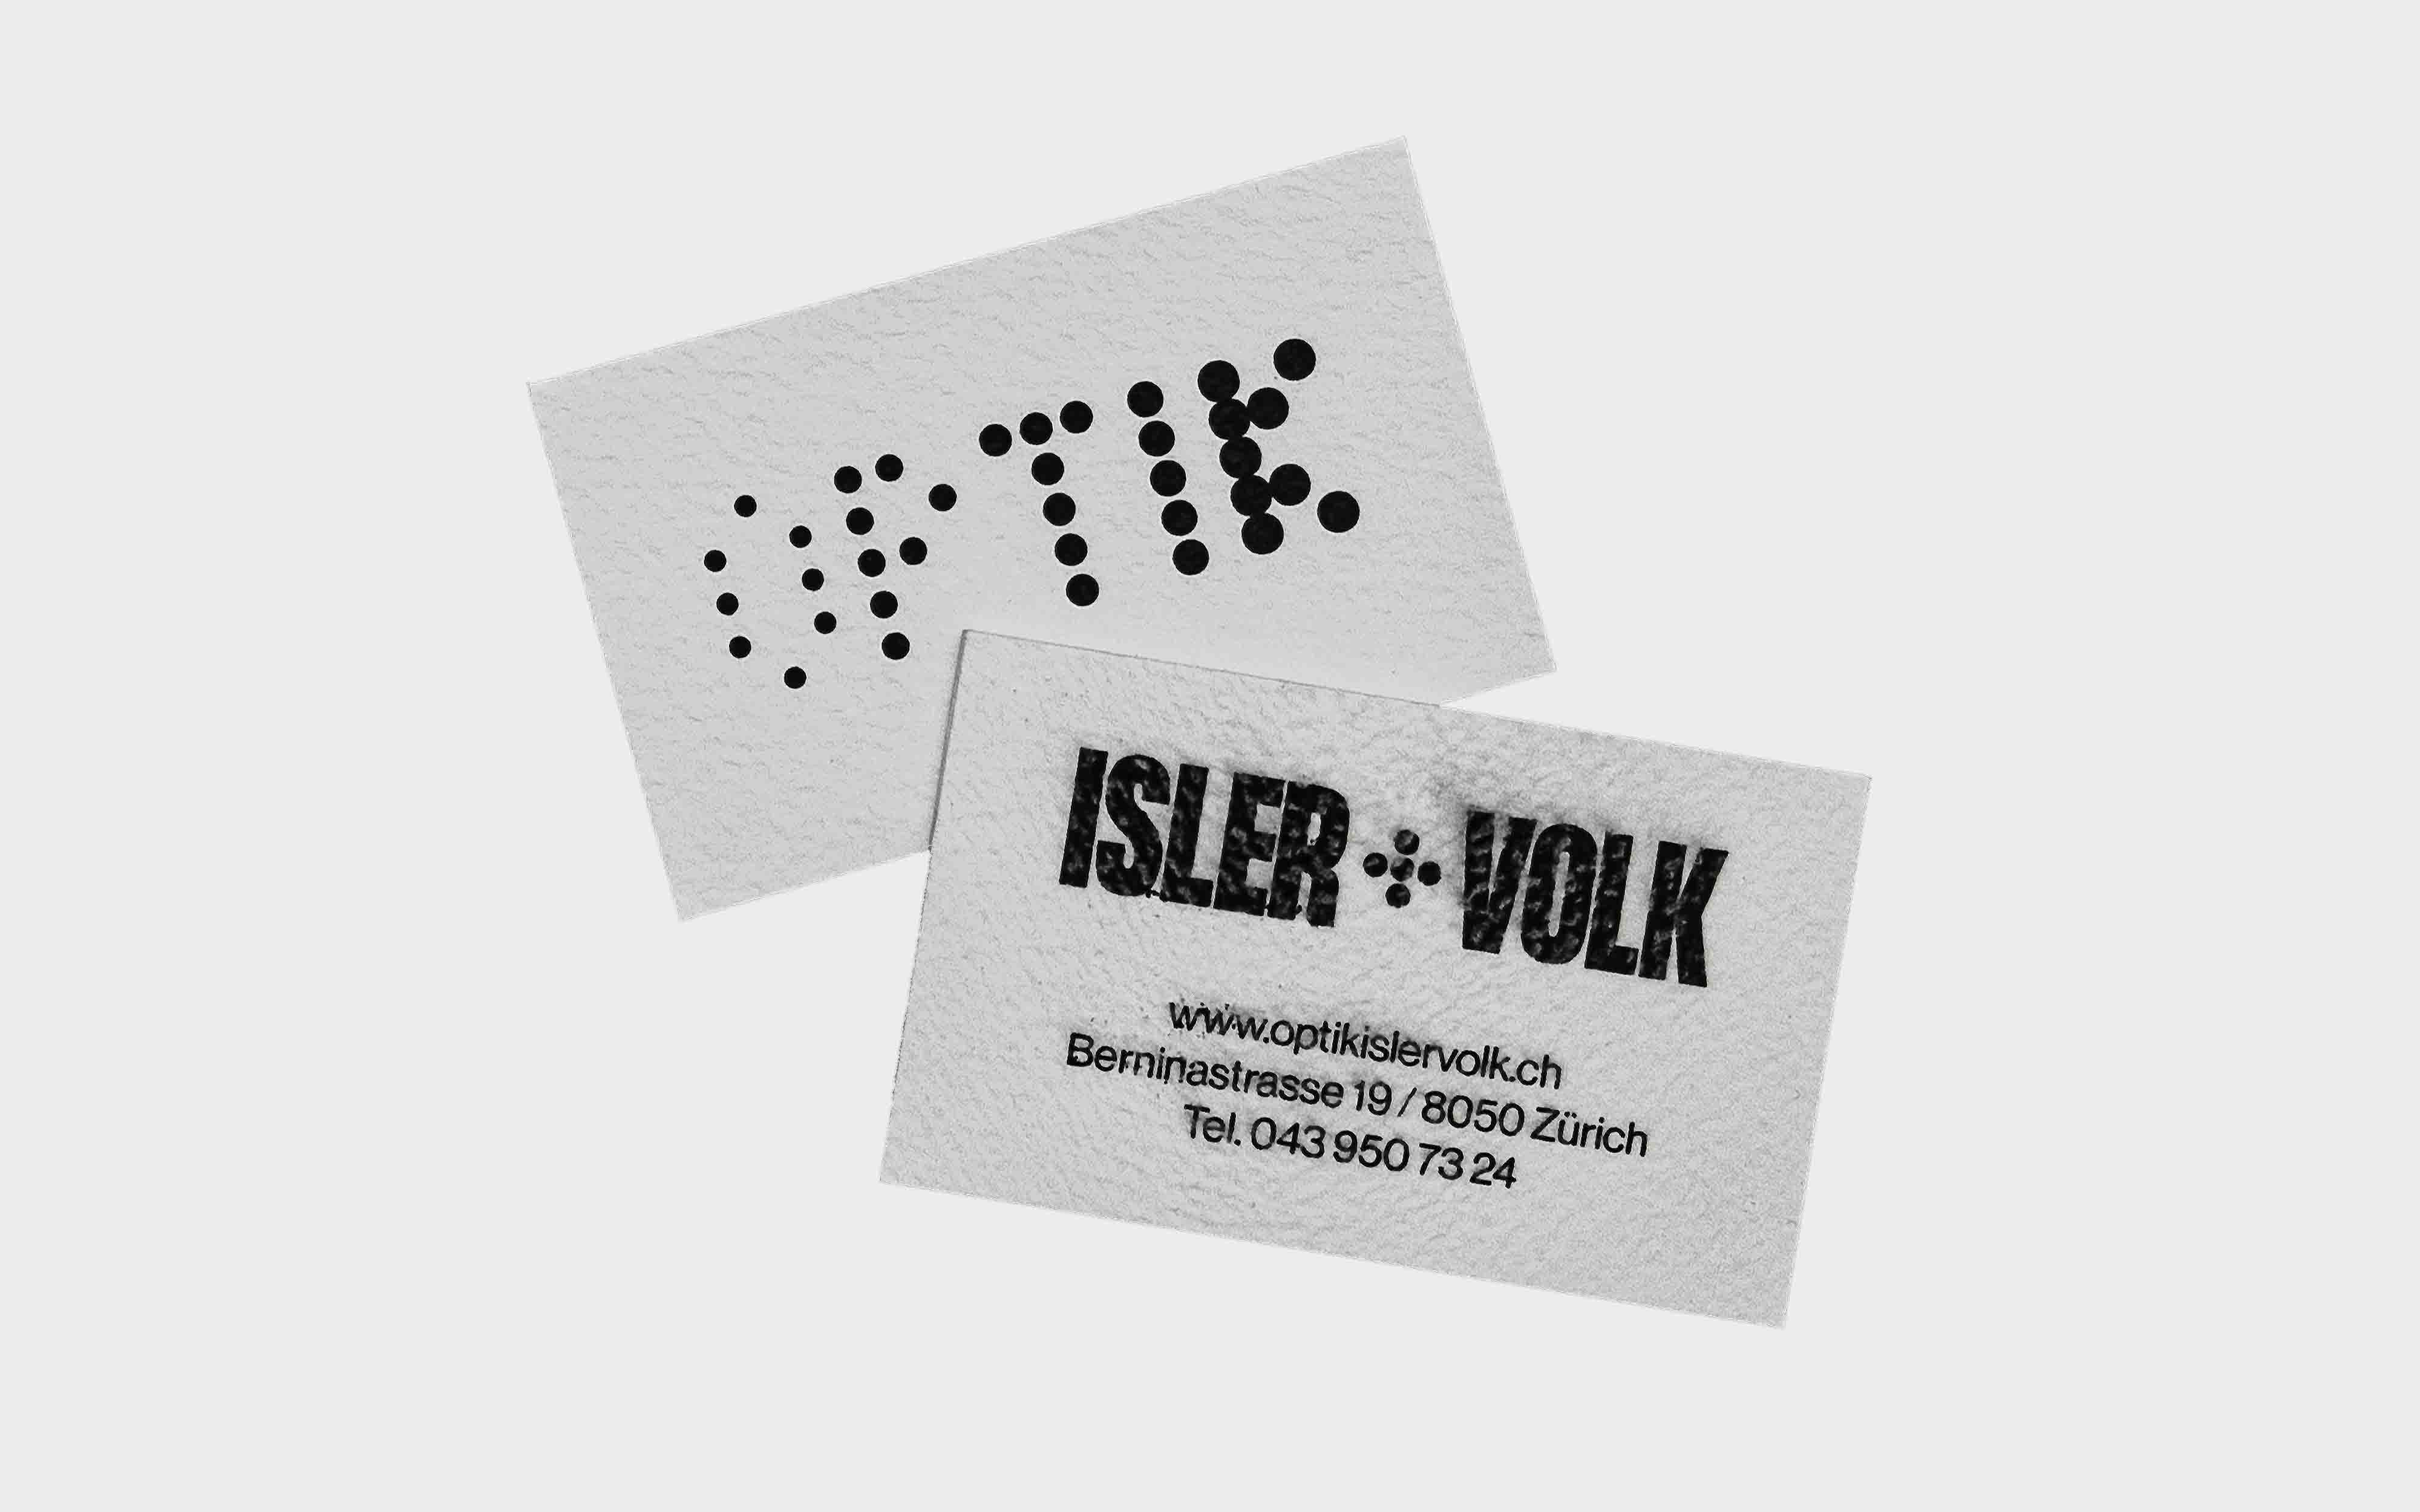 Optiker_Isler+Volk_Corporate_Design_Archive